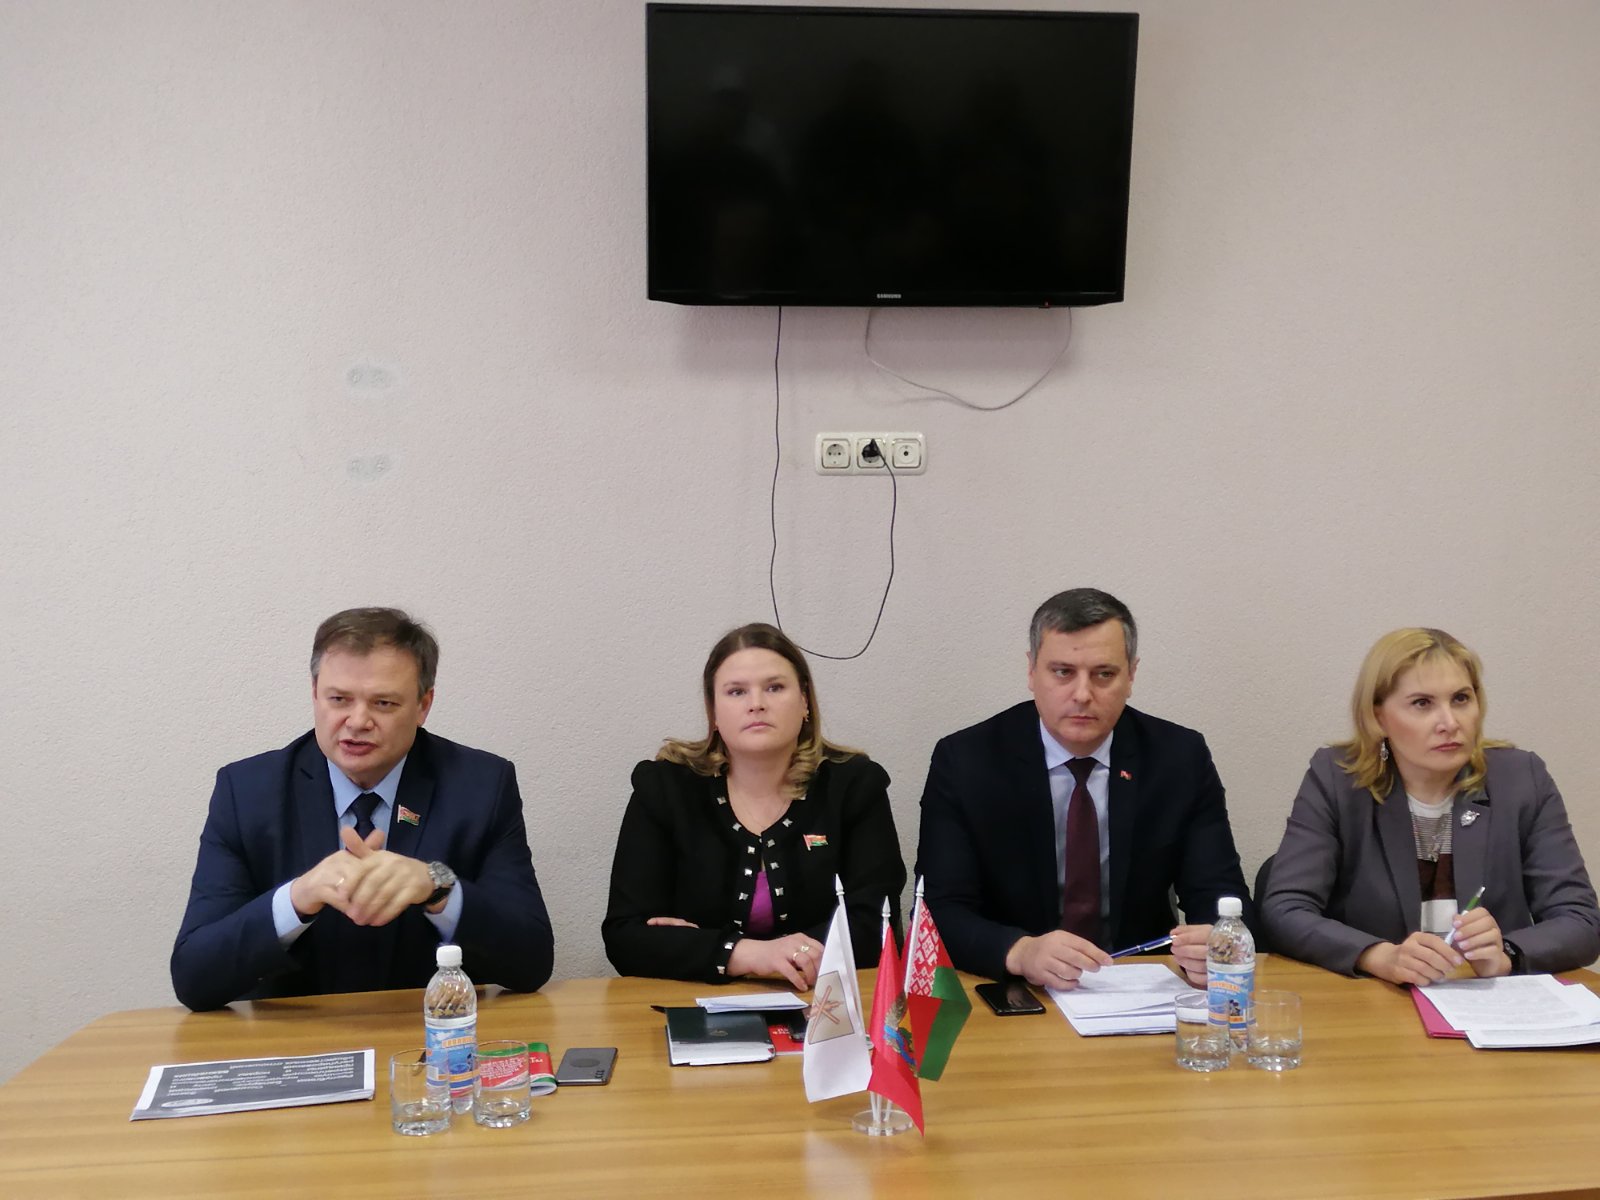 Встреча в рамках всенародного обсуждения проекта изменений и дополнений  Конституции Республики Беларусь